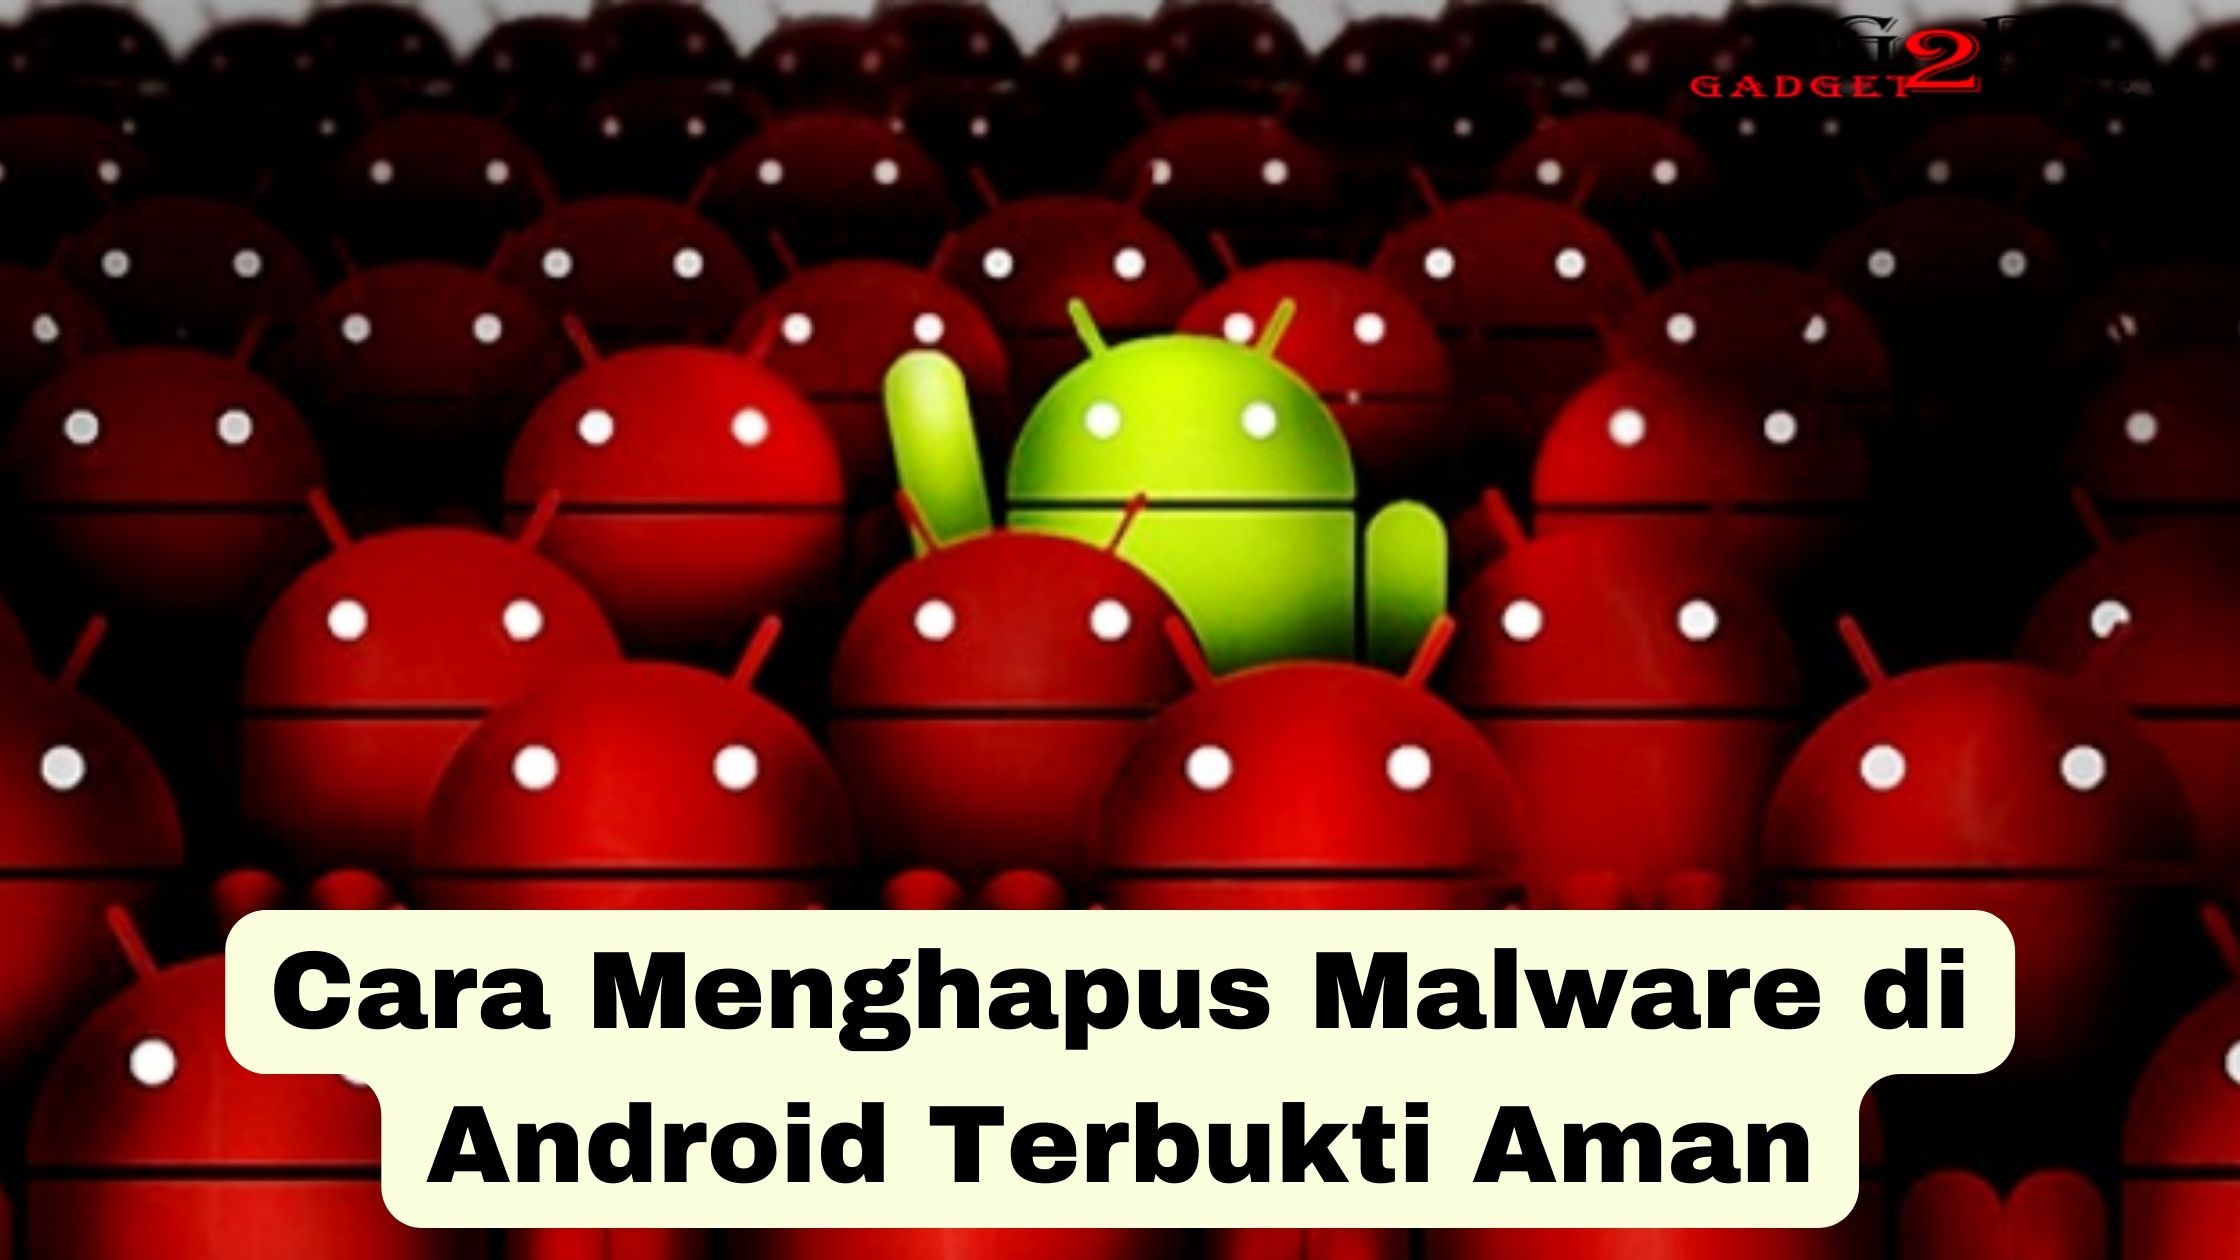 Cara Menghapus Malware di Android Secara Permanen: Panduan Lengkap